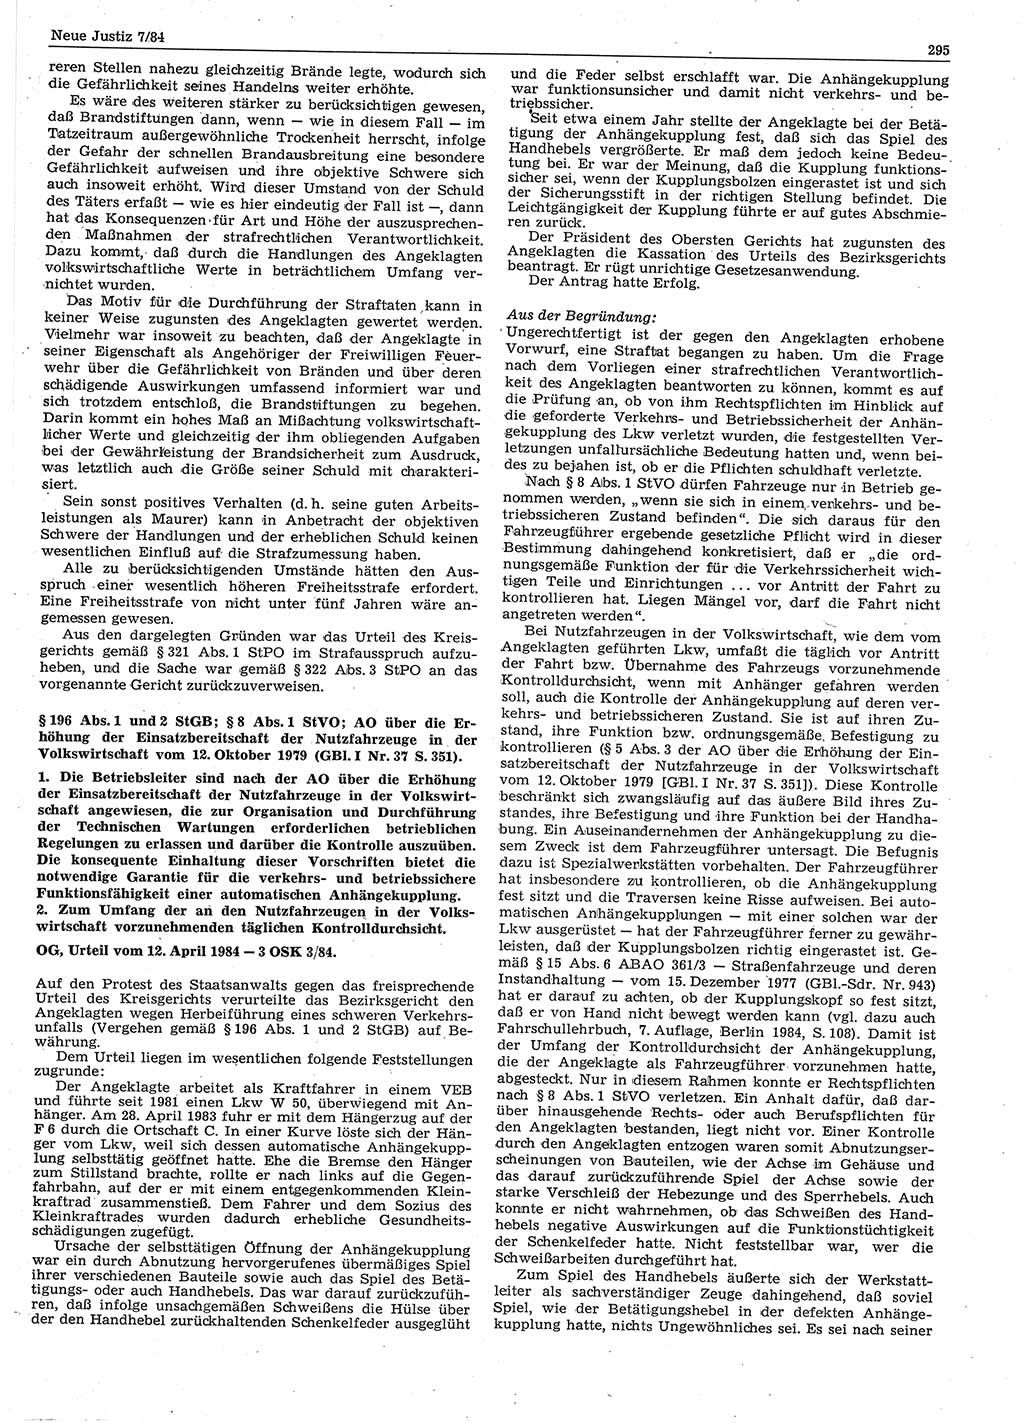 Neue Justiz (NJ), Zeitschrift für sozialistisches Recht und Gesetzlichkeit [Deutsche Demokratische Republik (DDR)], 38. Jahrgang 1984, Seite 295 (NJ DDR 1984, S. 295)